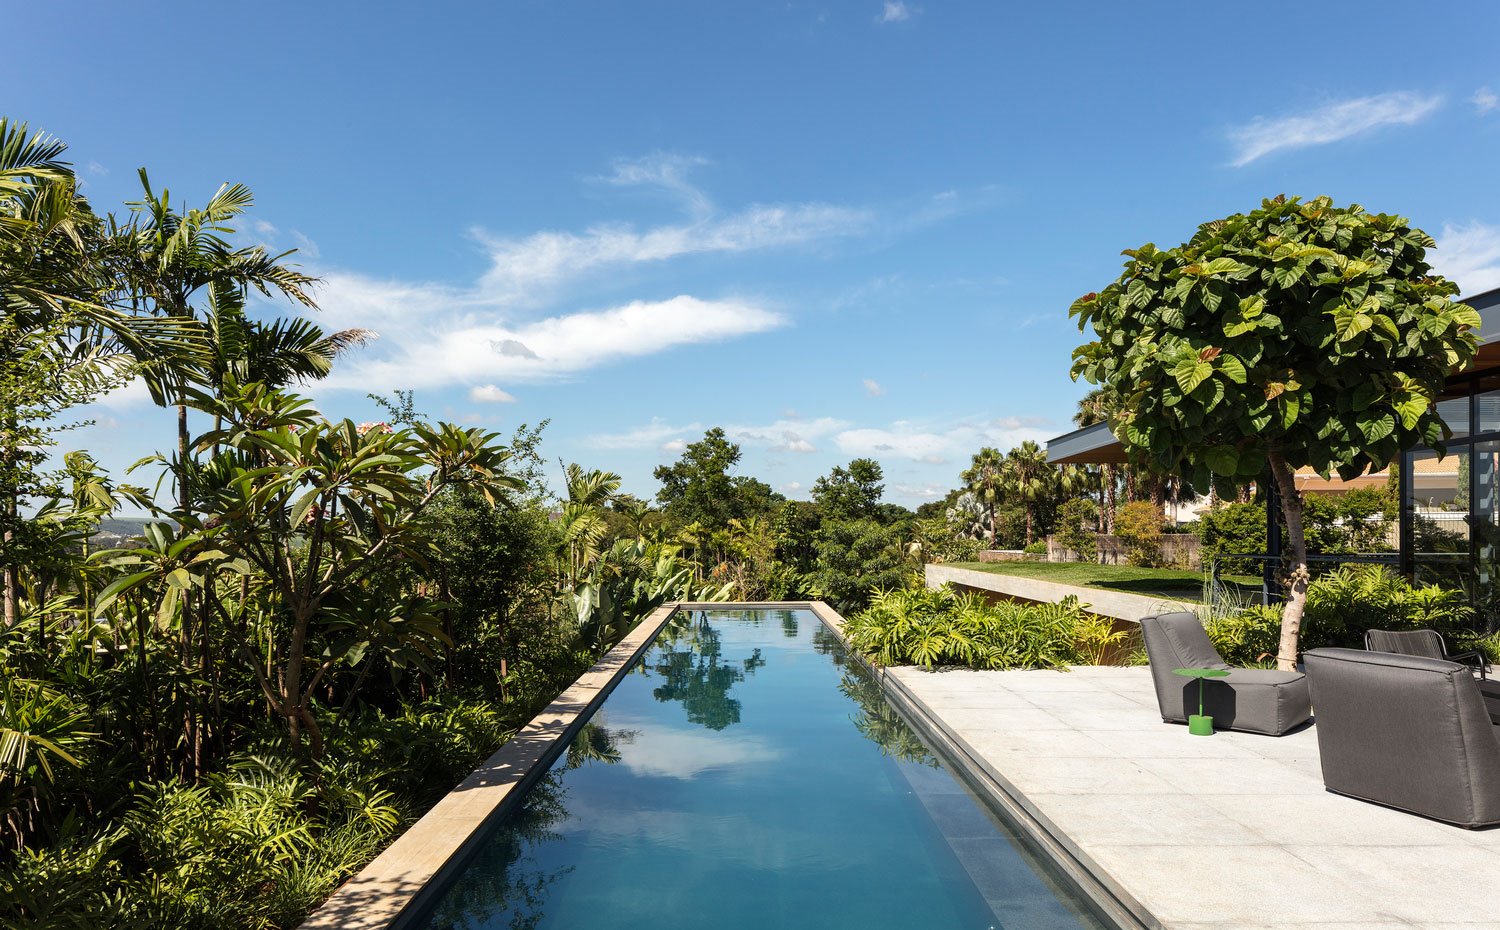 Piscina alargada exterior, vegetación tropical, terraza exterior con butacas grises, 